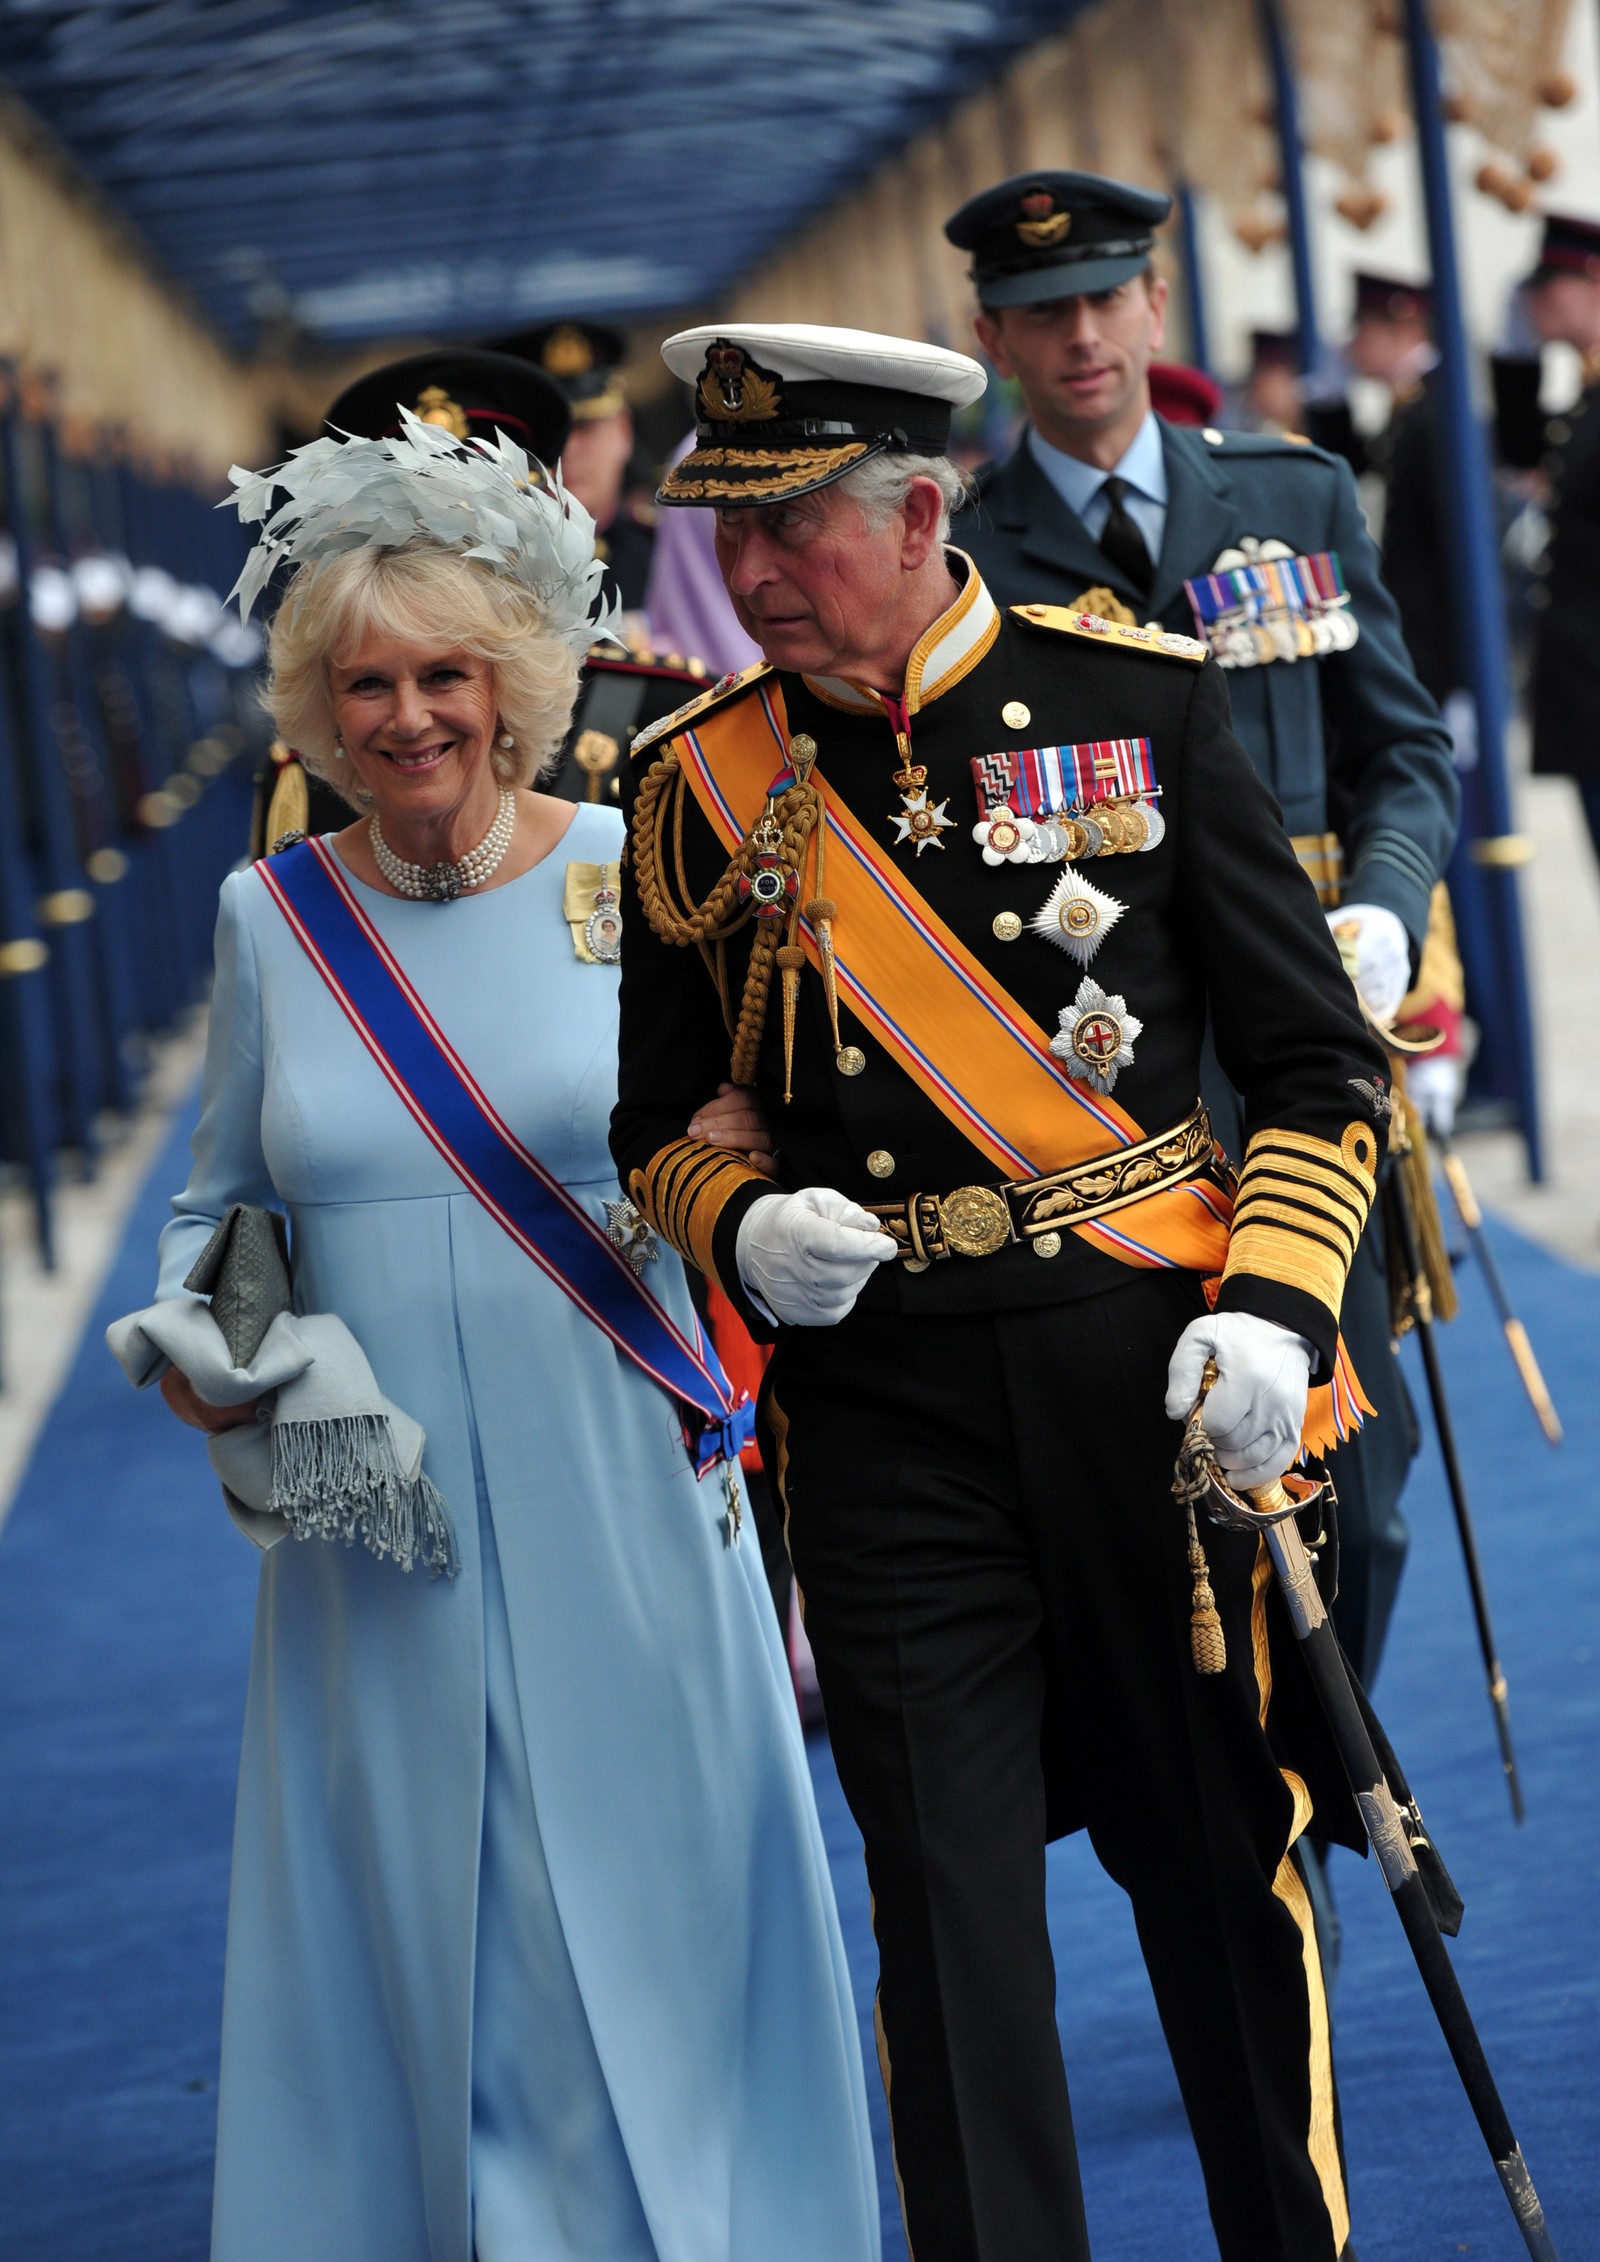 Camila Bowels-Parker e o príncipe Prince Charles, na cerimônia parao monarca Willem Alexander da Holanda, em 2013 — Foto: GettyImages